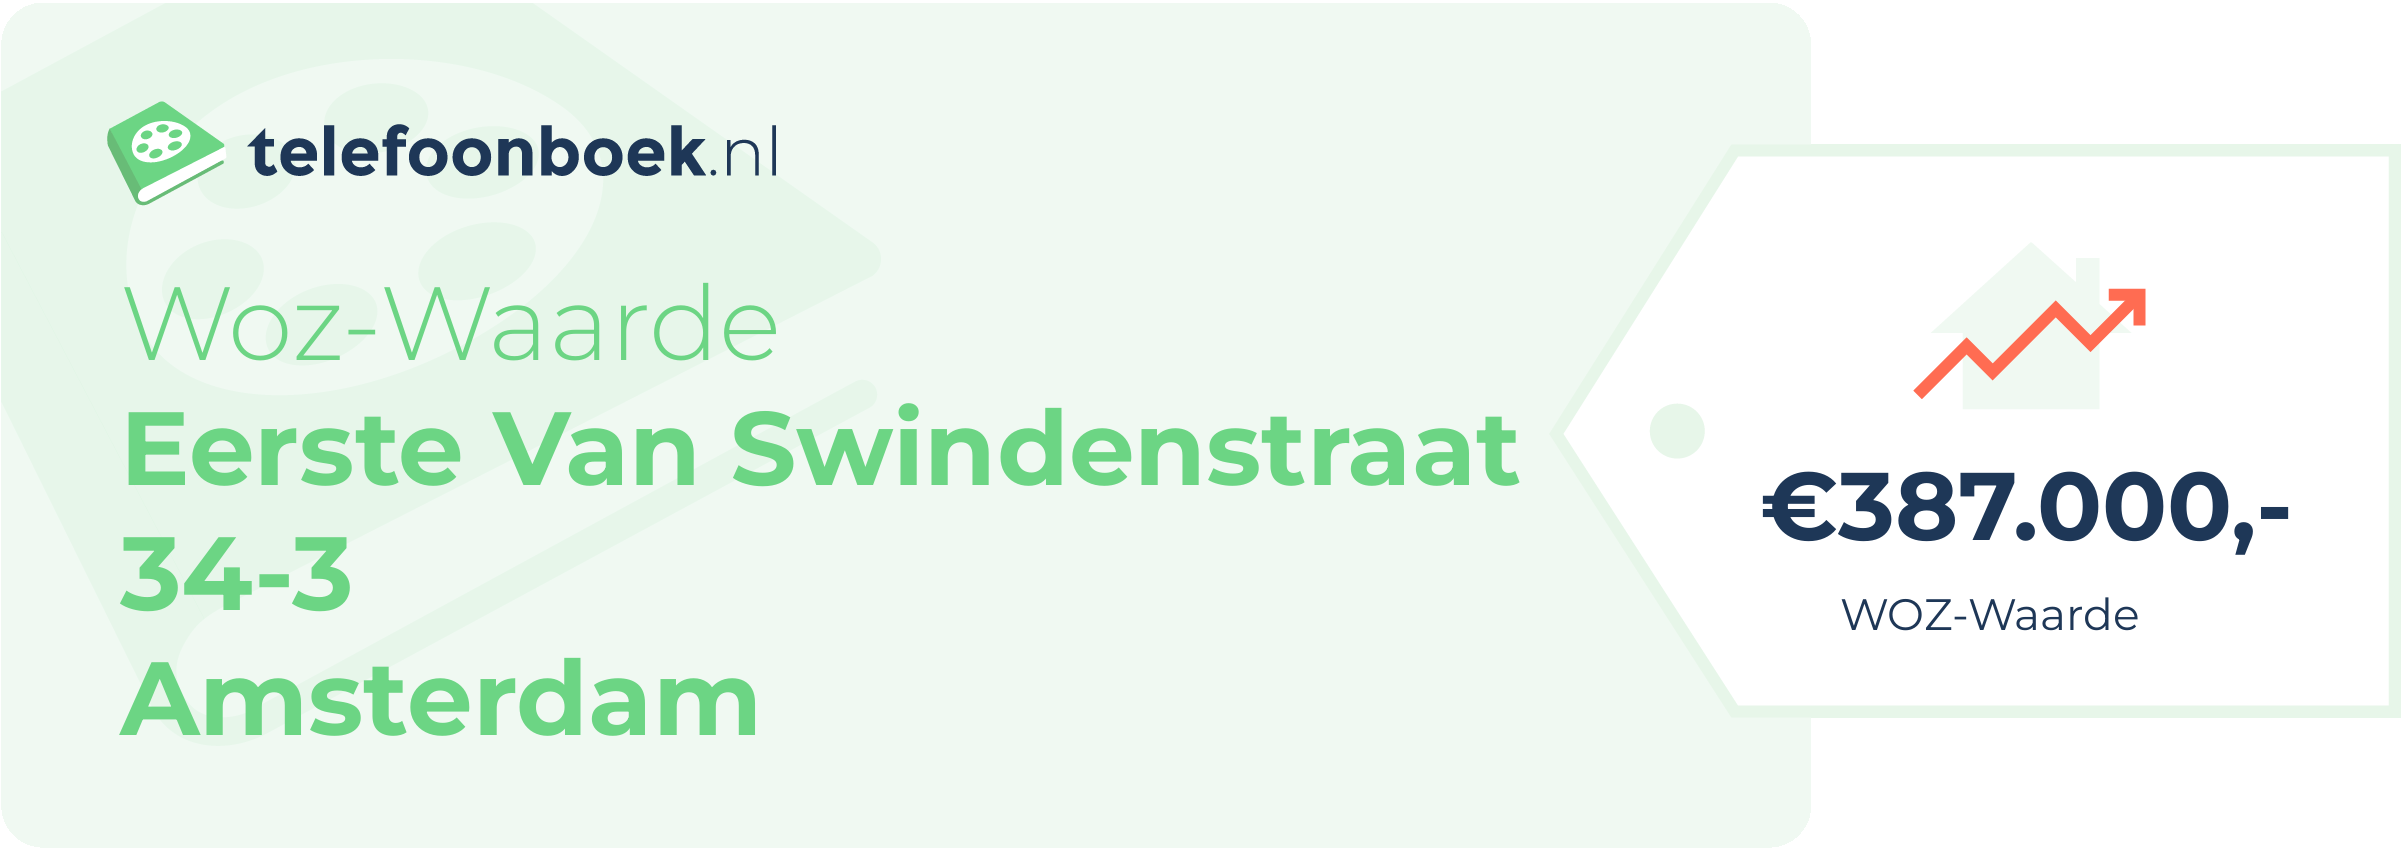 WOZ-waarde Eerste Van Swindenstraat 34-3 Amsterdam